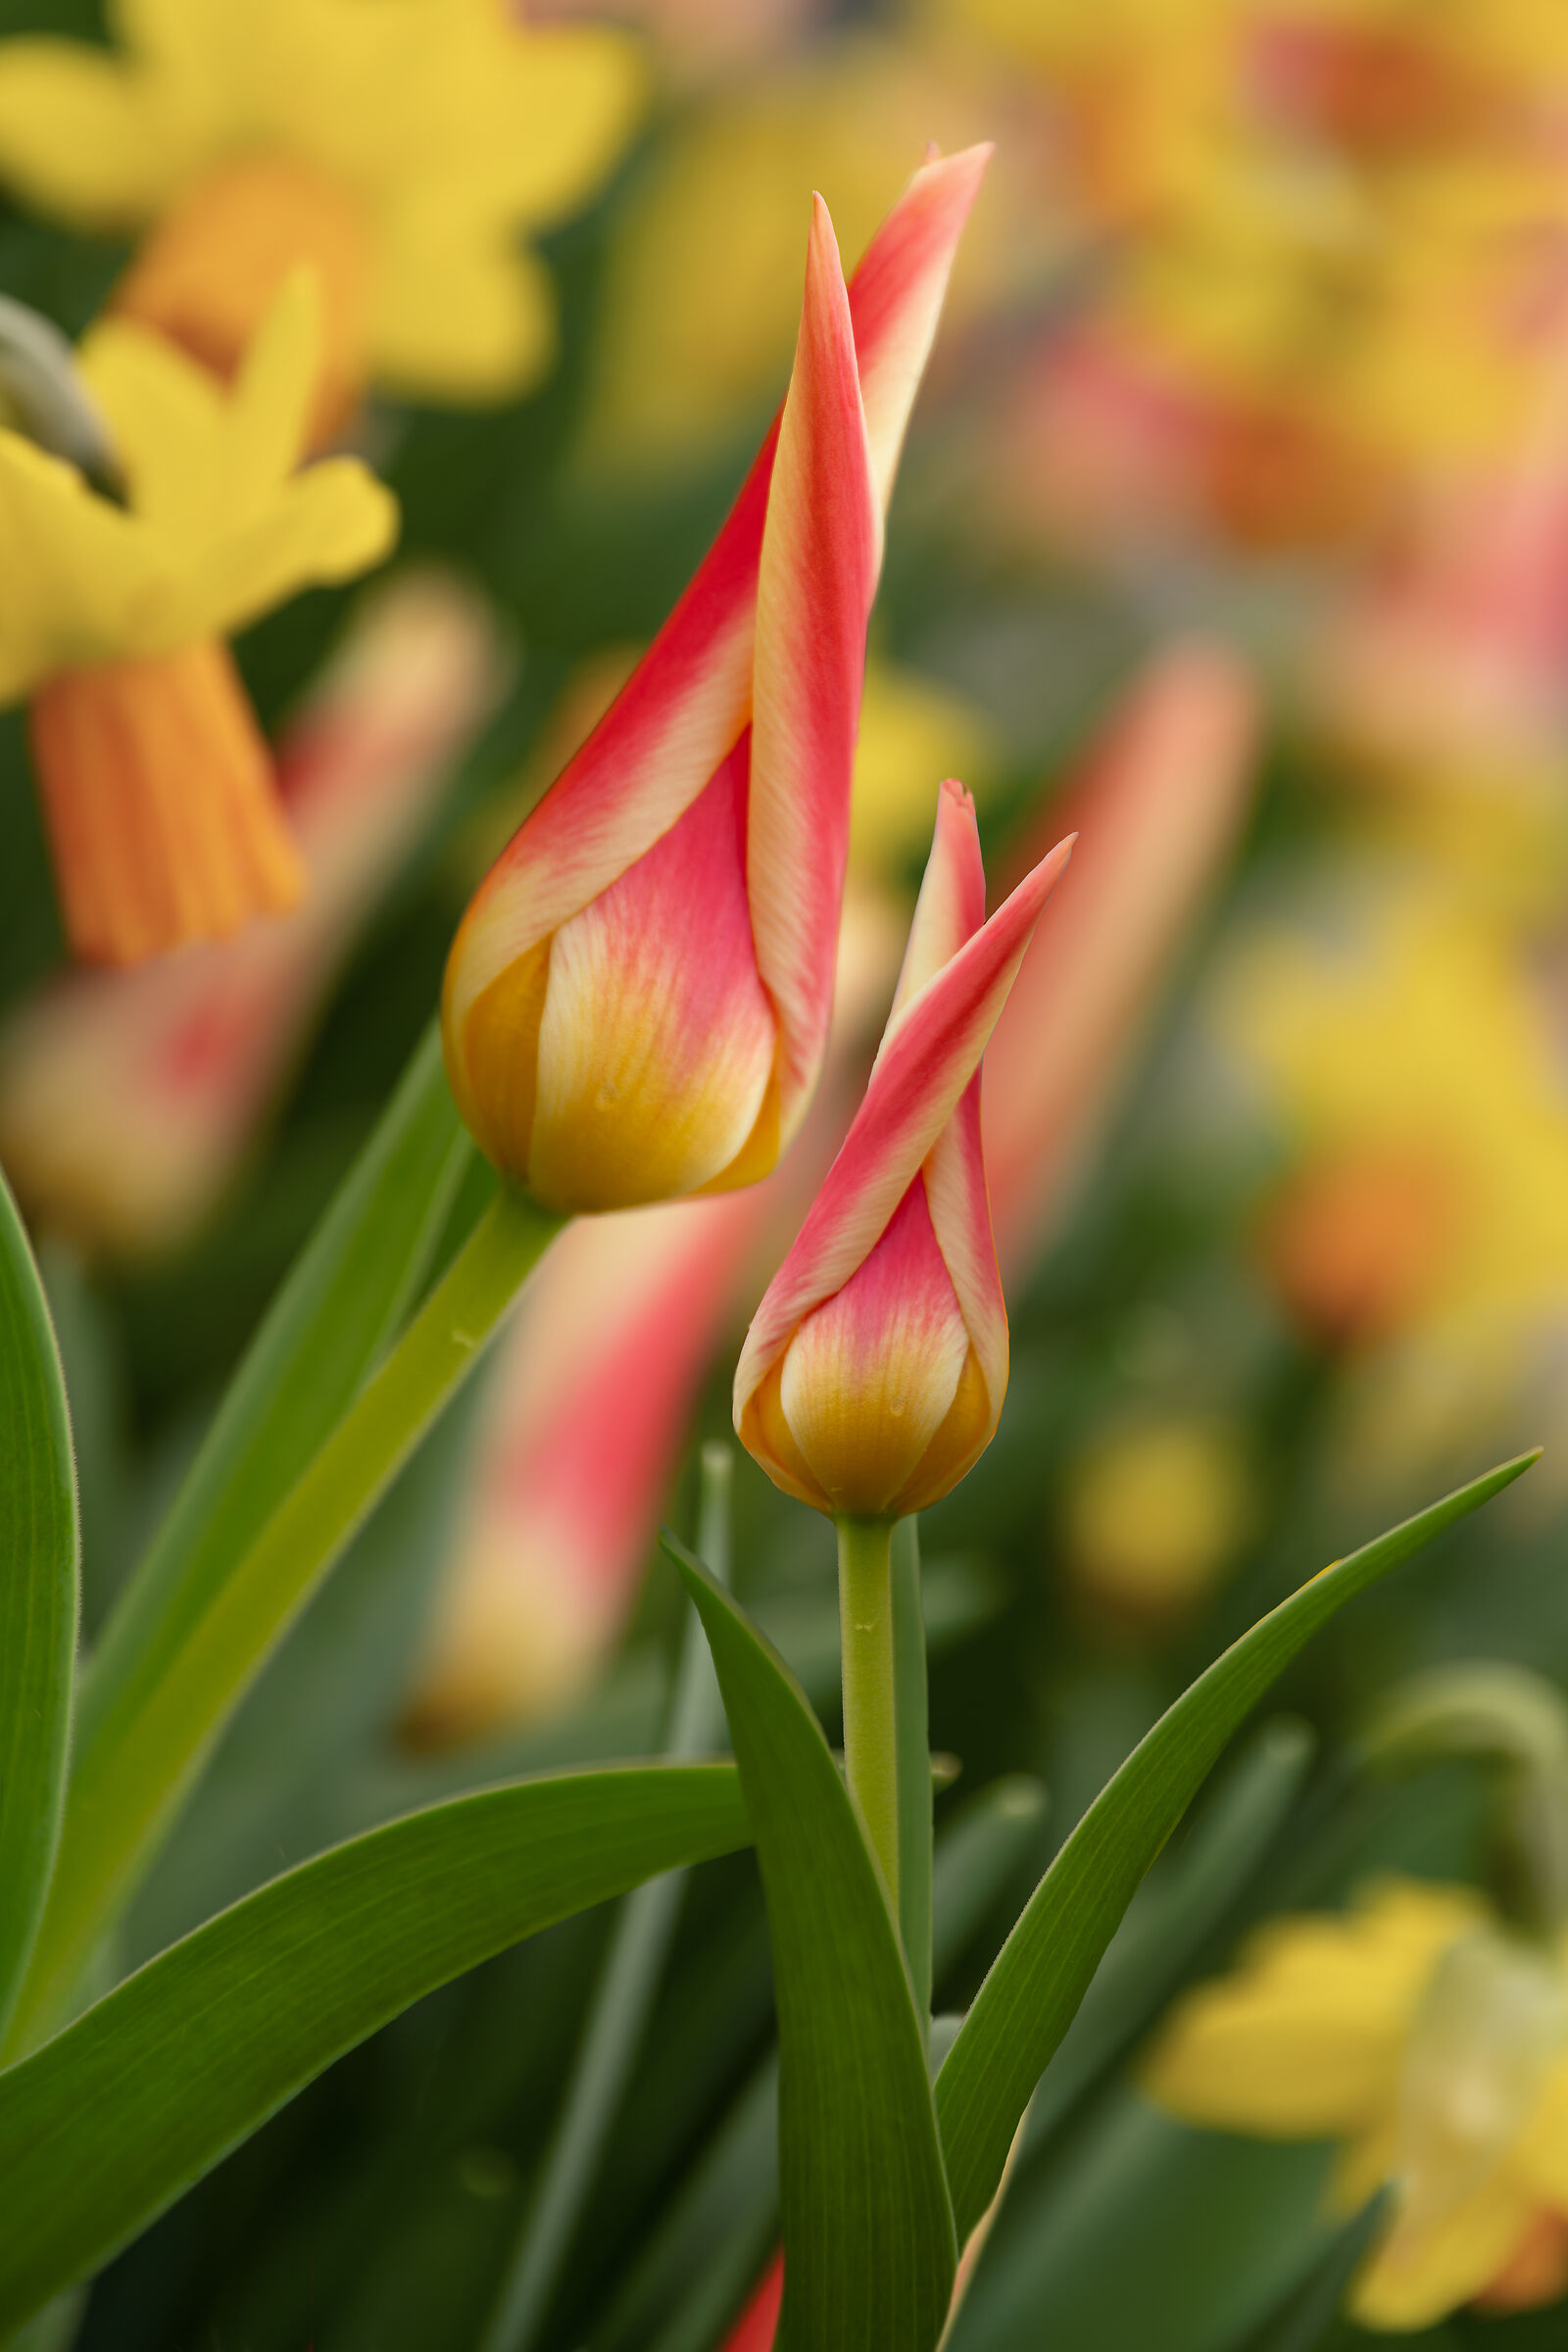 I colori caldi dei tulipani...